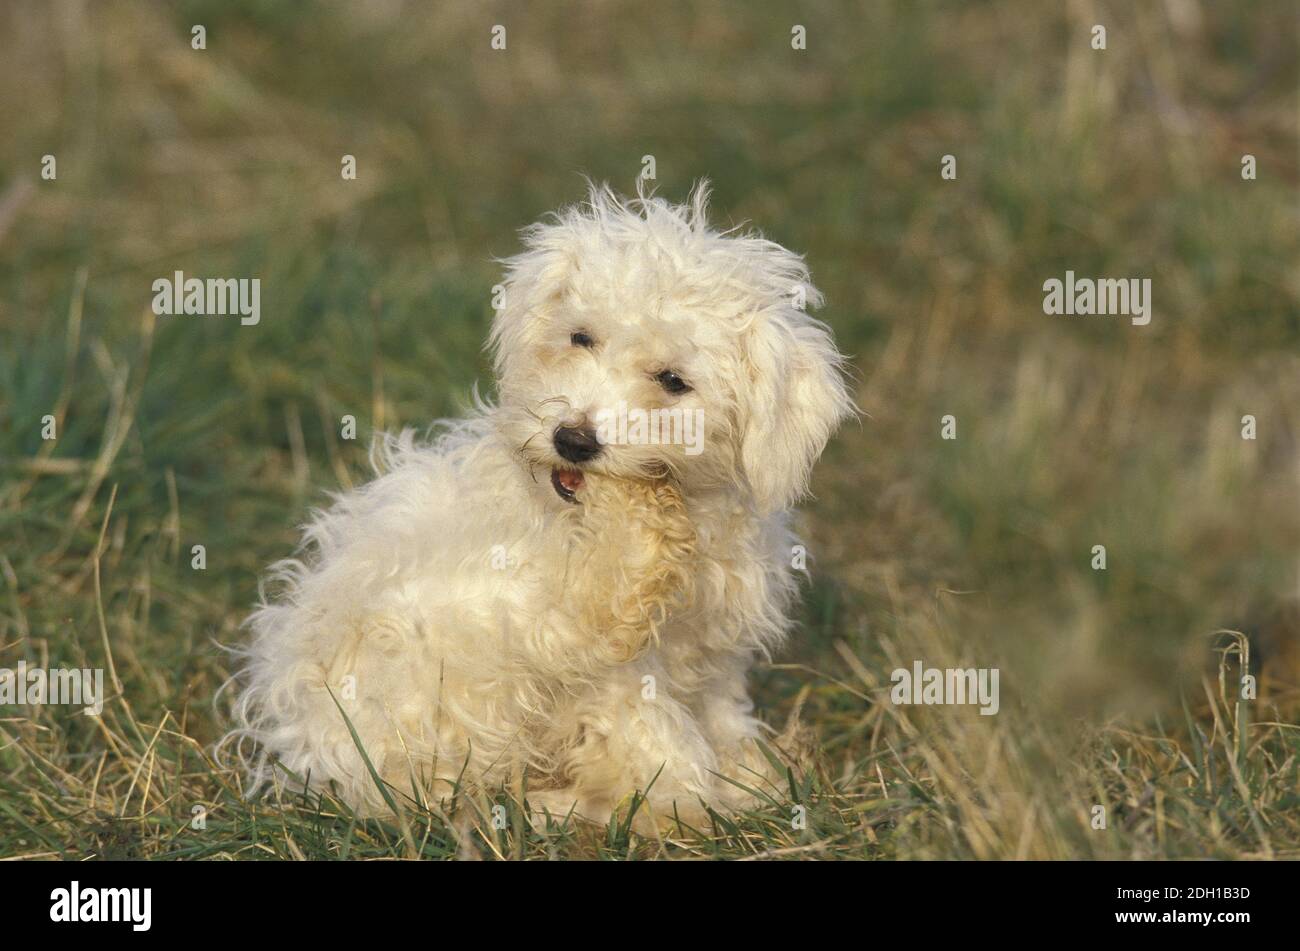 Bichon Frise Dog, Adult Biting its Paw Stock Photo